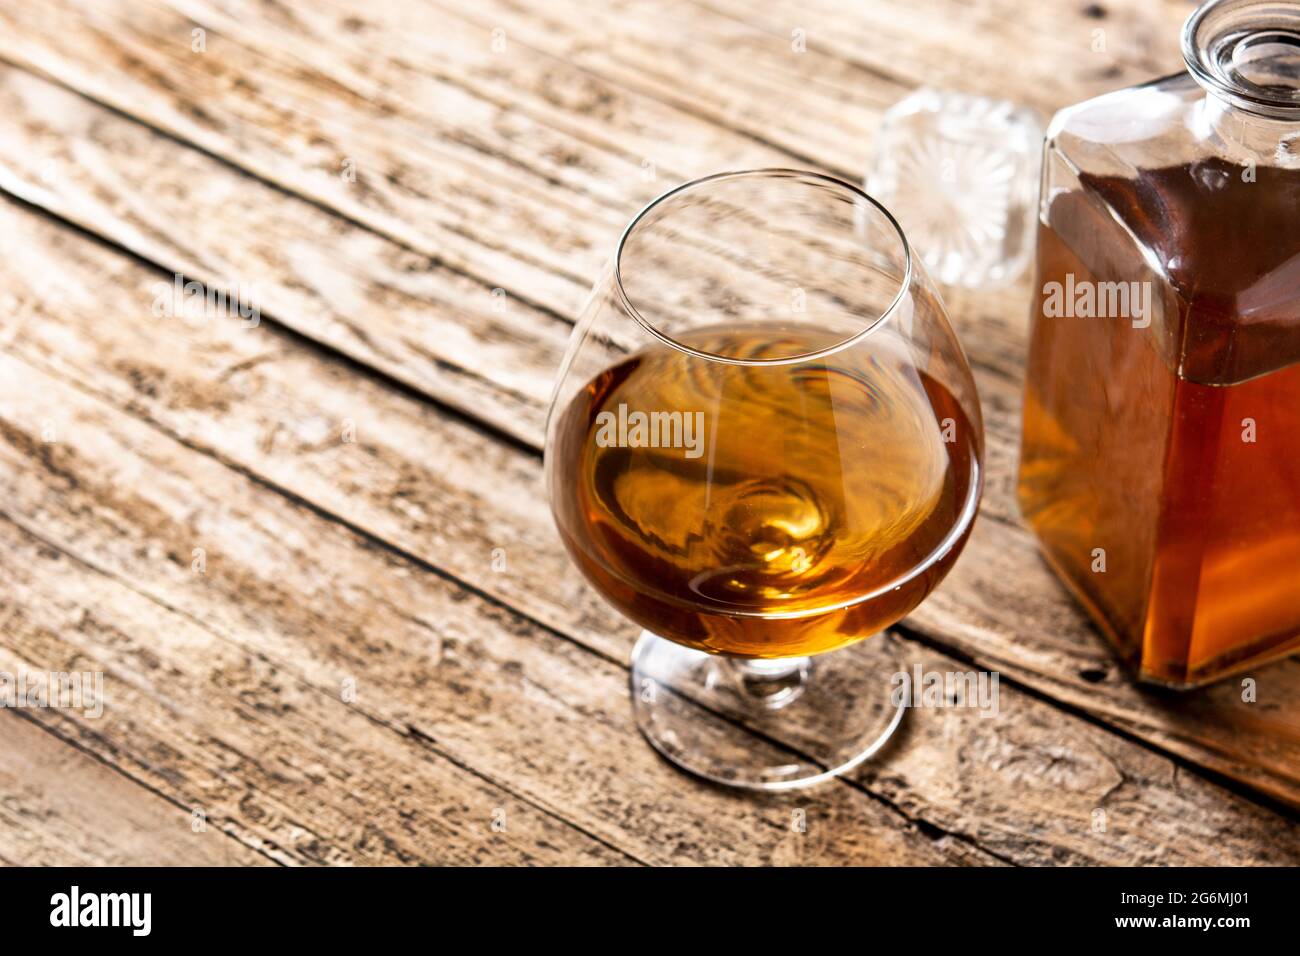 Boisson au Cognac sur une table en bois Banque D'Images